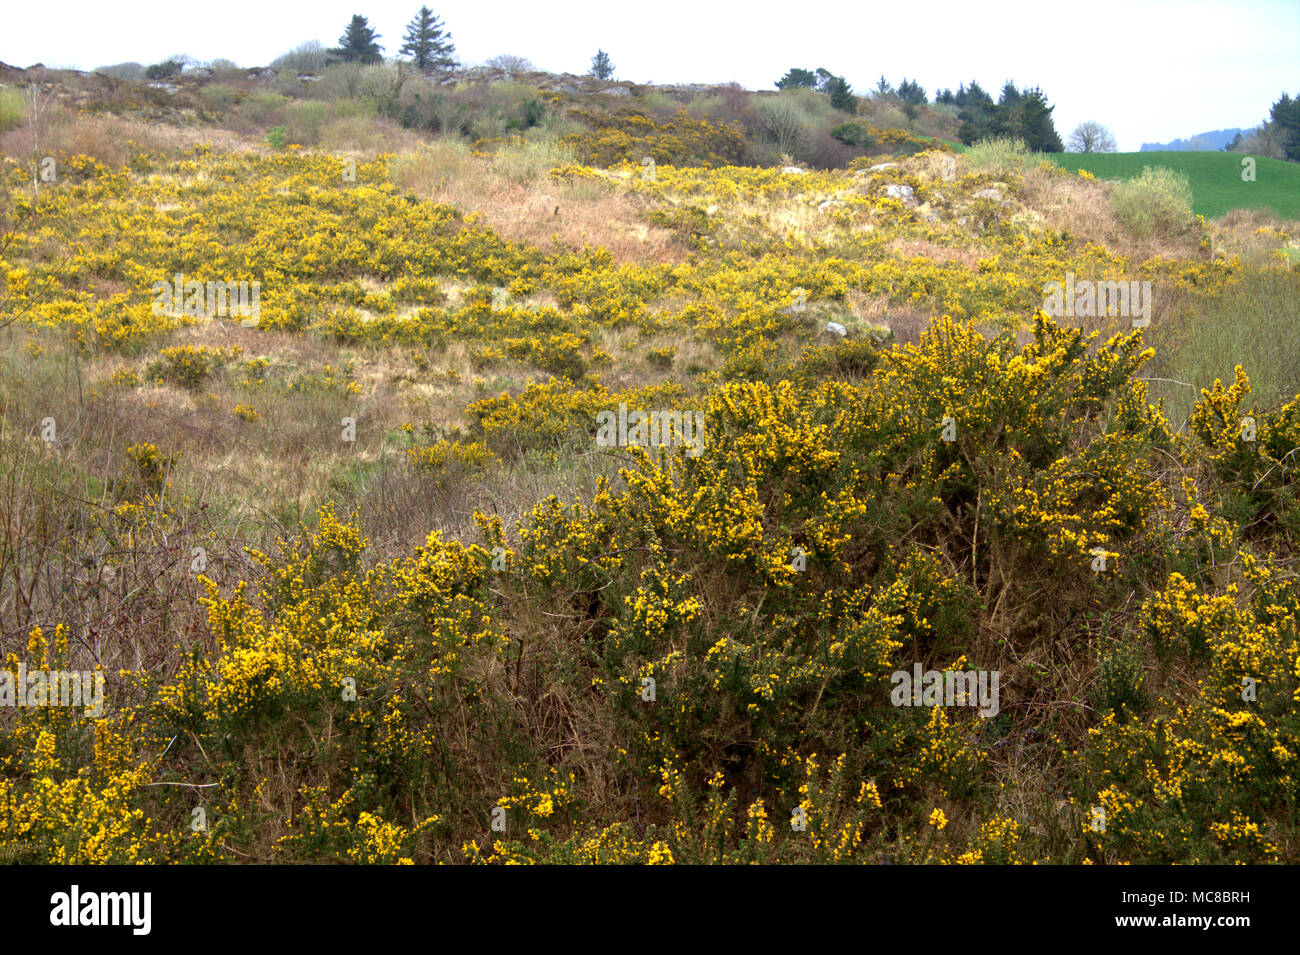 Ulex europaeus, retamas en flor llena de la primavera que cubre una ladera irlandesa en flores de color amarillo brillante. Foto de stock